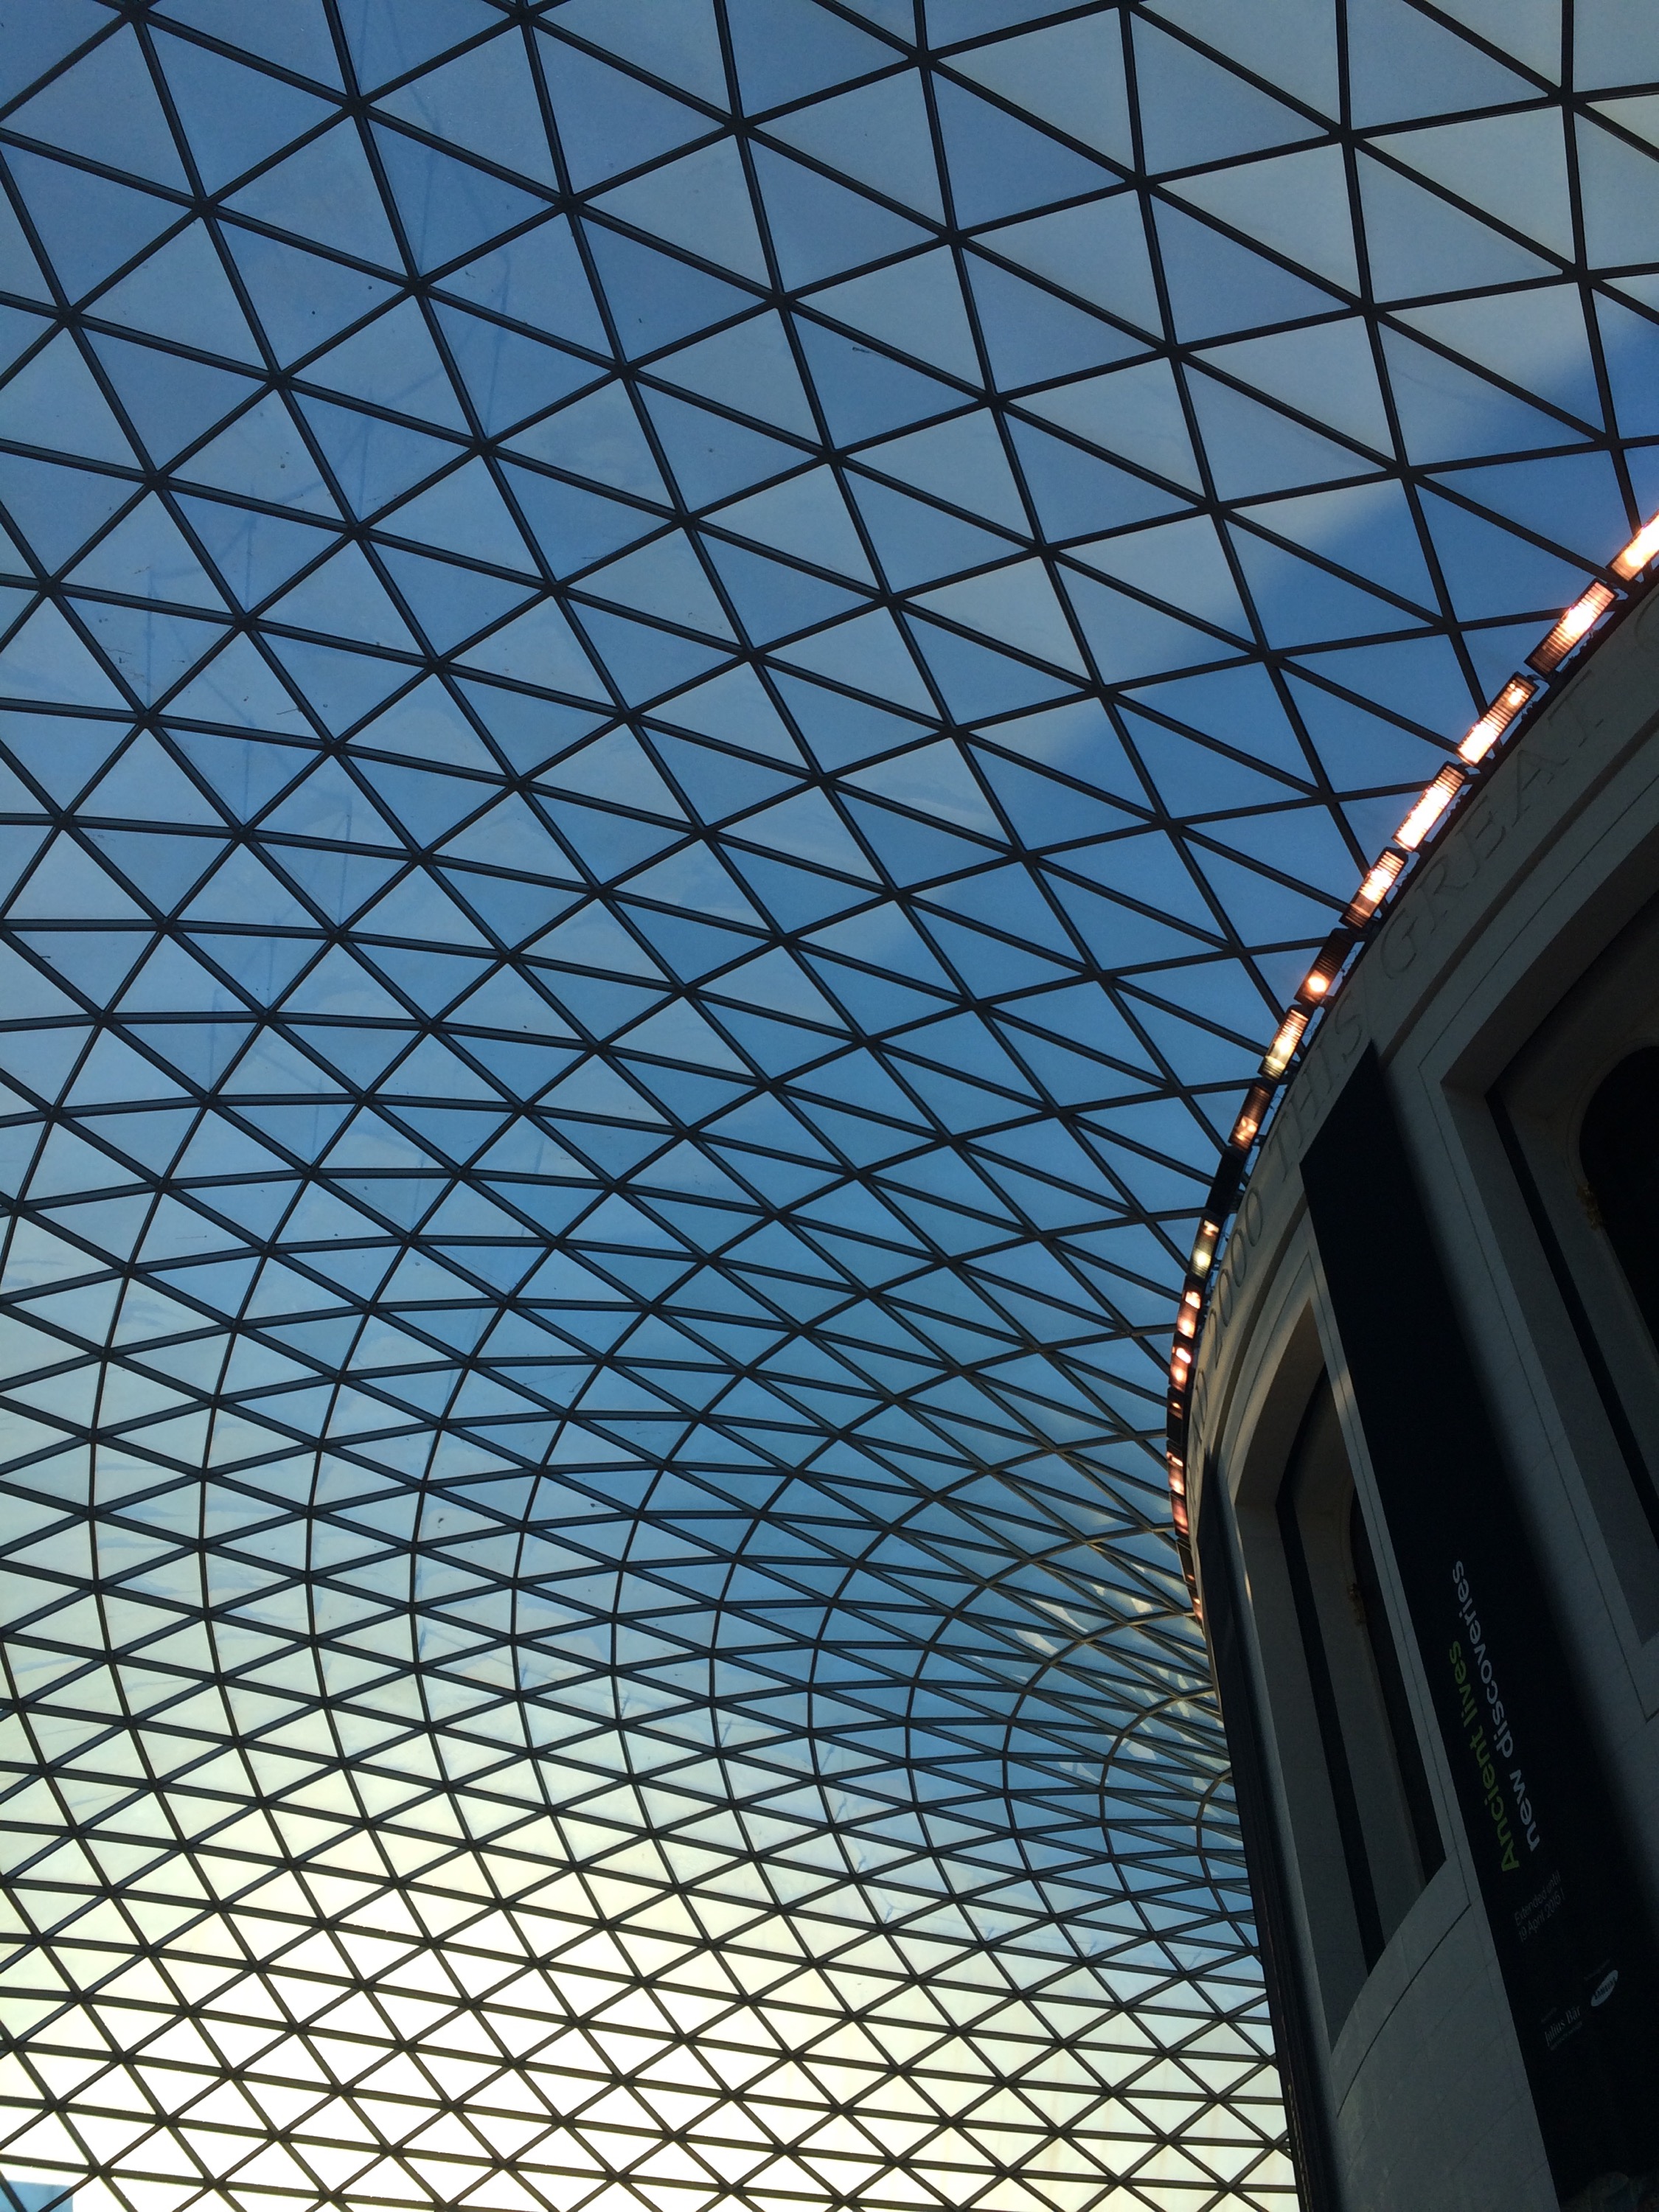 British Museum Glass Roof